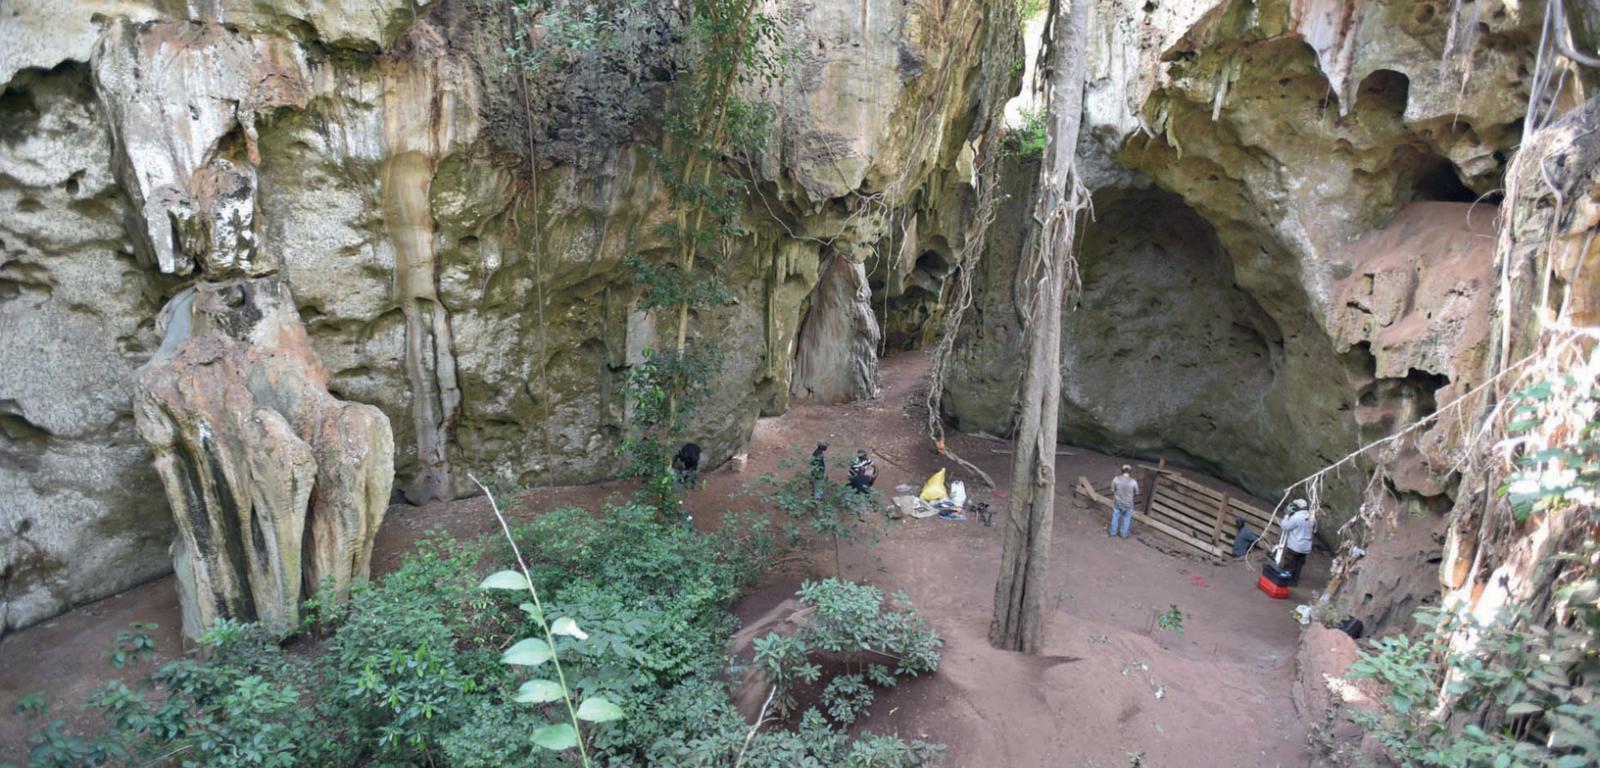 Szczątki znaleziono w jaskini Panga ya Saidi, która znajduje się w południowo-wschodniej Kenii, w odległości ok. 15 km od Oceanu Indyjskiego.